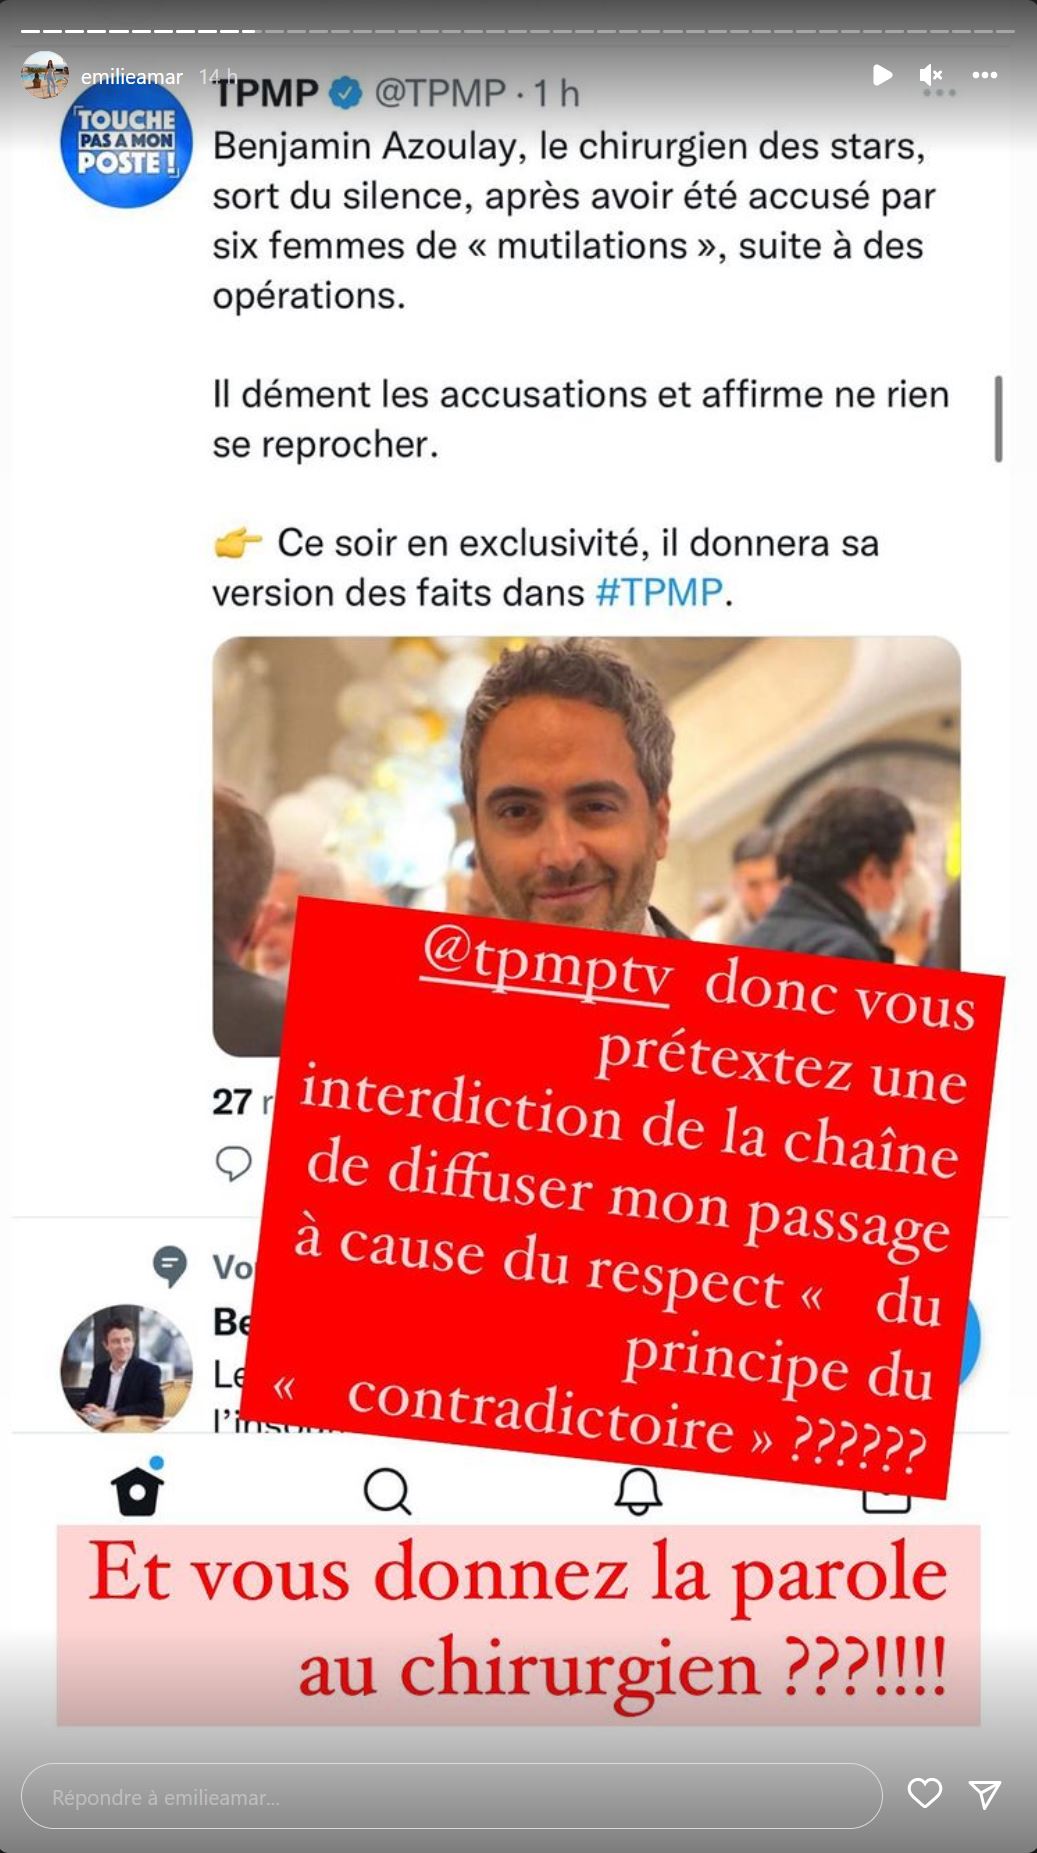  Emilie Amar confirme ne pas avoir payé son intervention malgré les propos de Benjamin Azoulay sur TPMP @Instagram